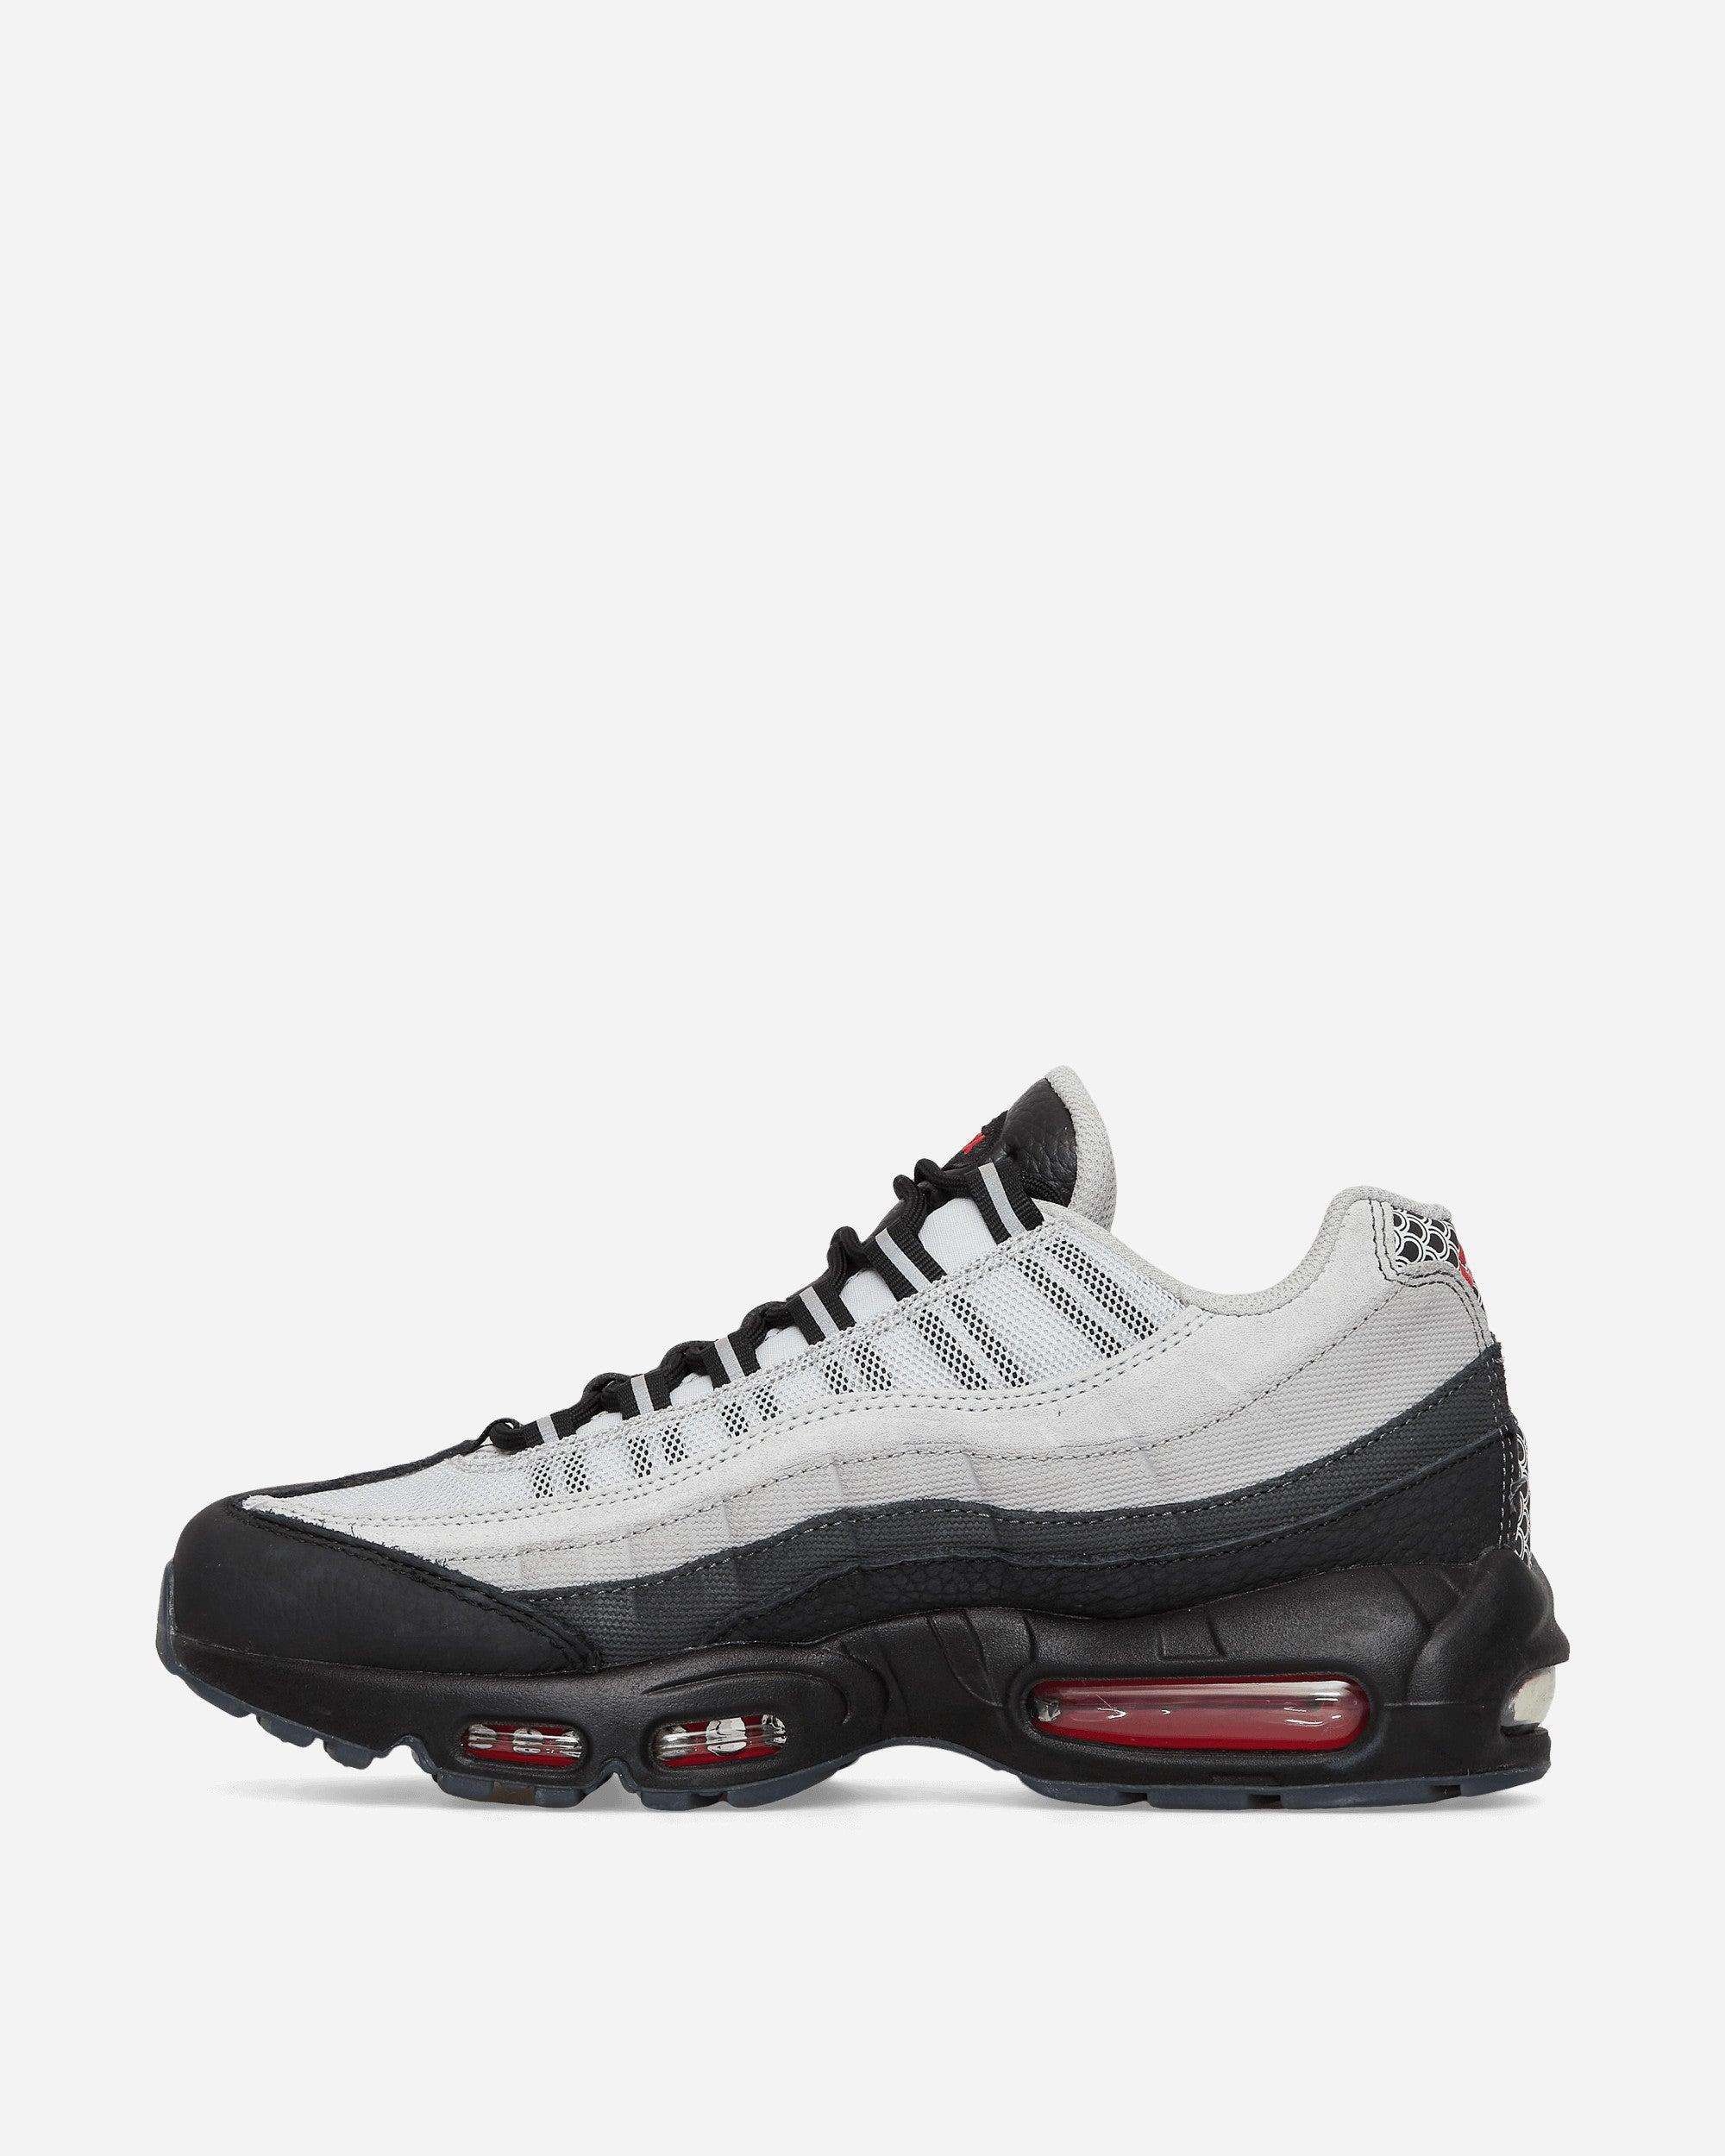 Nike Air Max 95 Premium Sneakers Black / White for Men | Lyst